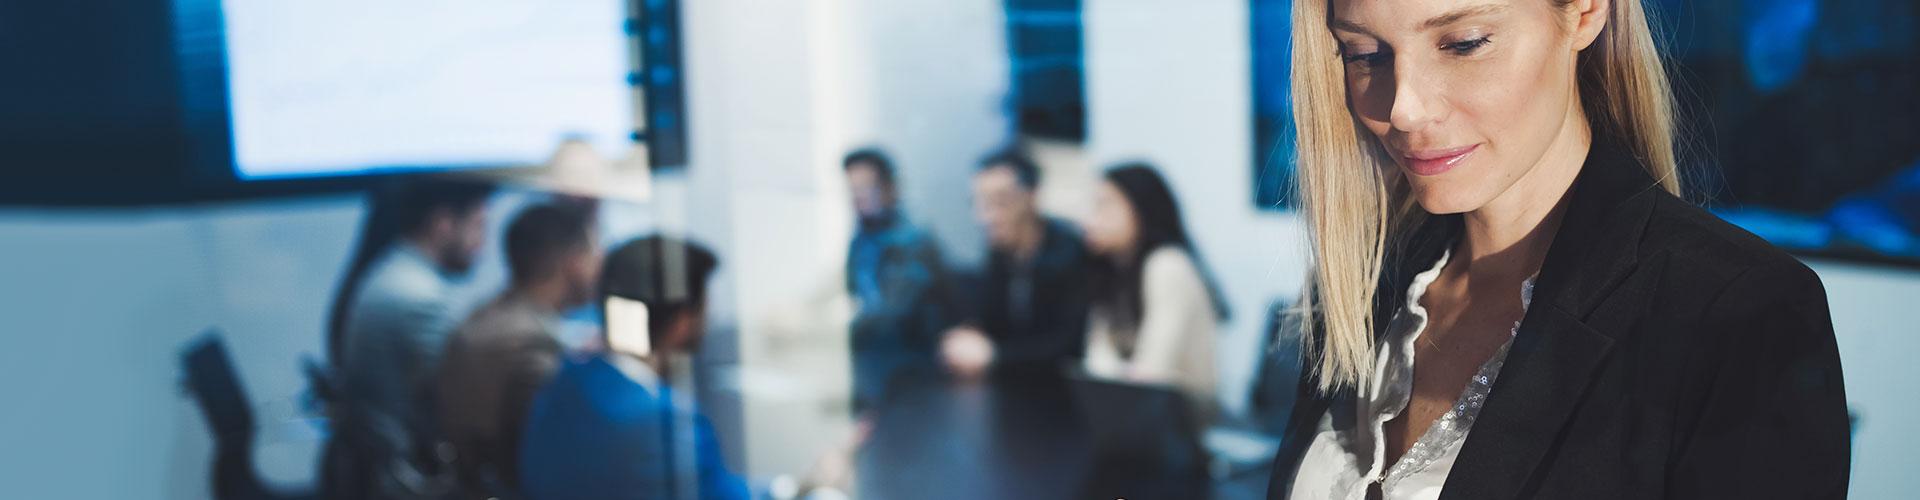 Seguros para Empresas - Mujer joven y rubia de negocios con chaqueta de traje negra y camisa blanca utilizando una tablet en una reunion en la oficina